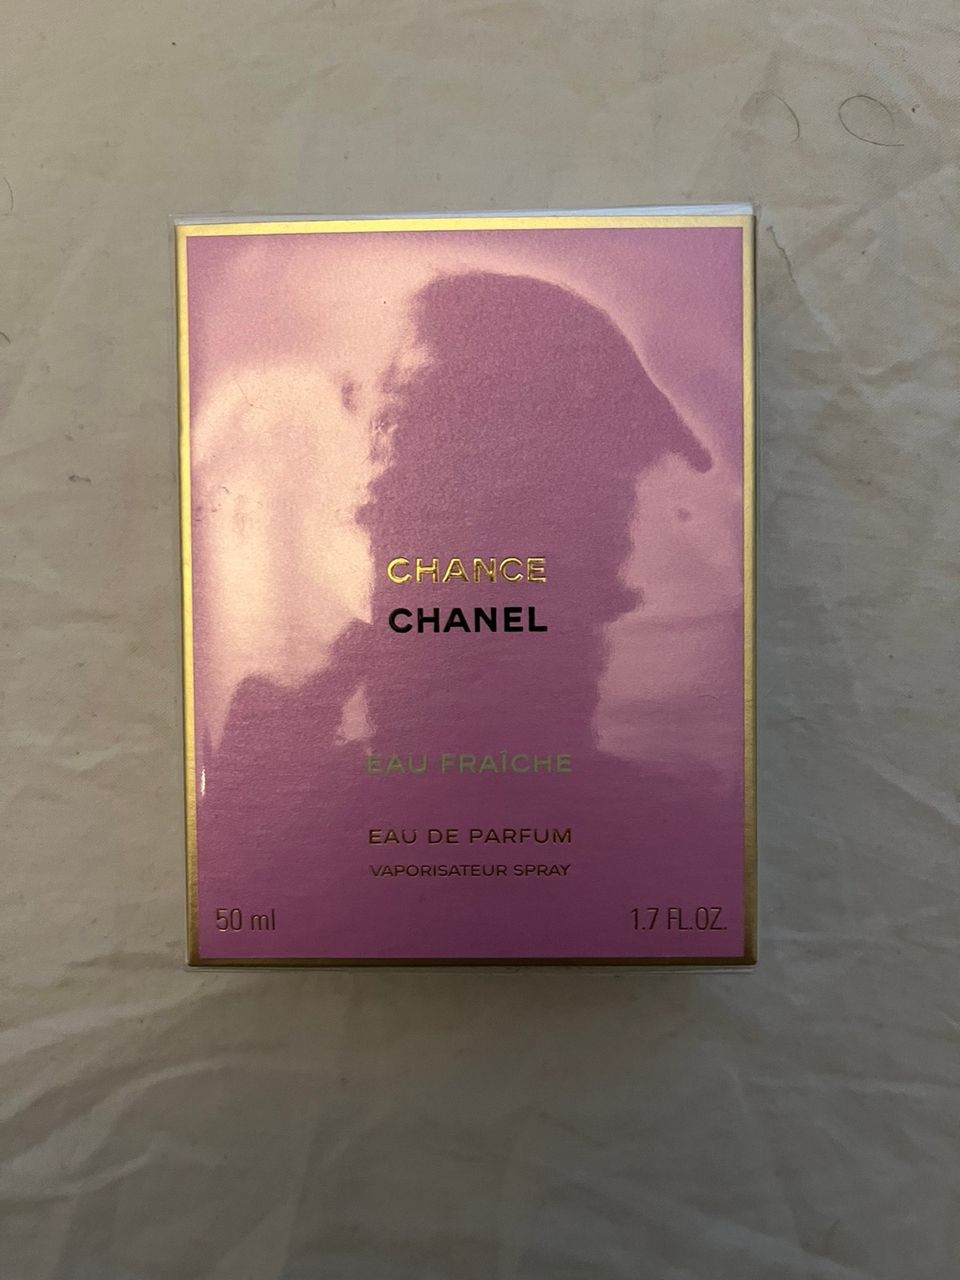 Chance Chanel Eau de parfum 50ml